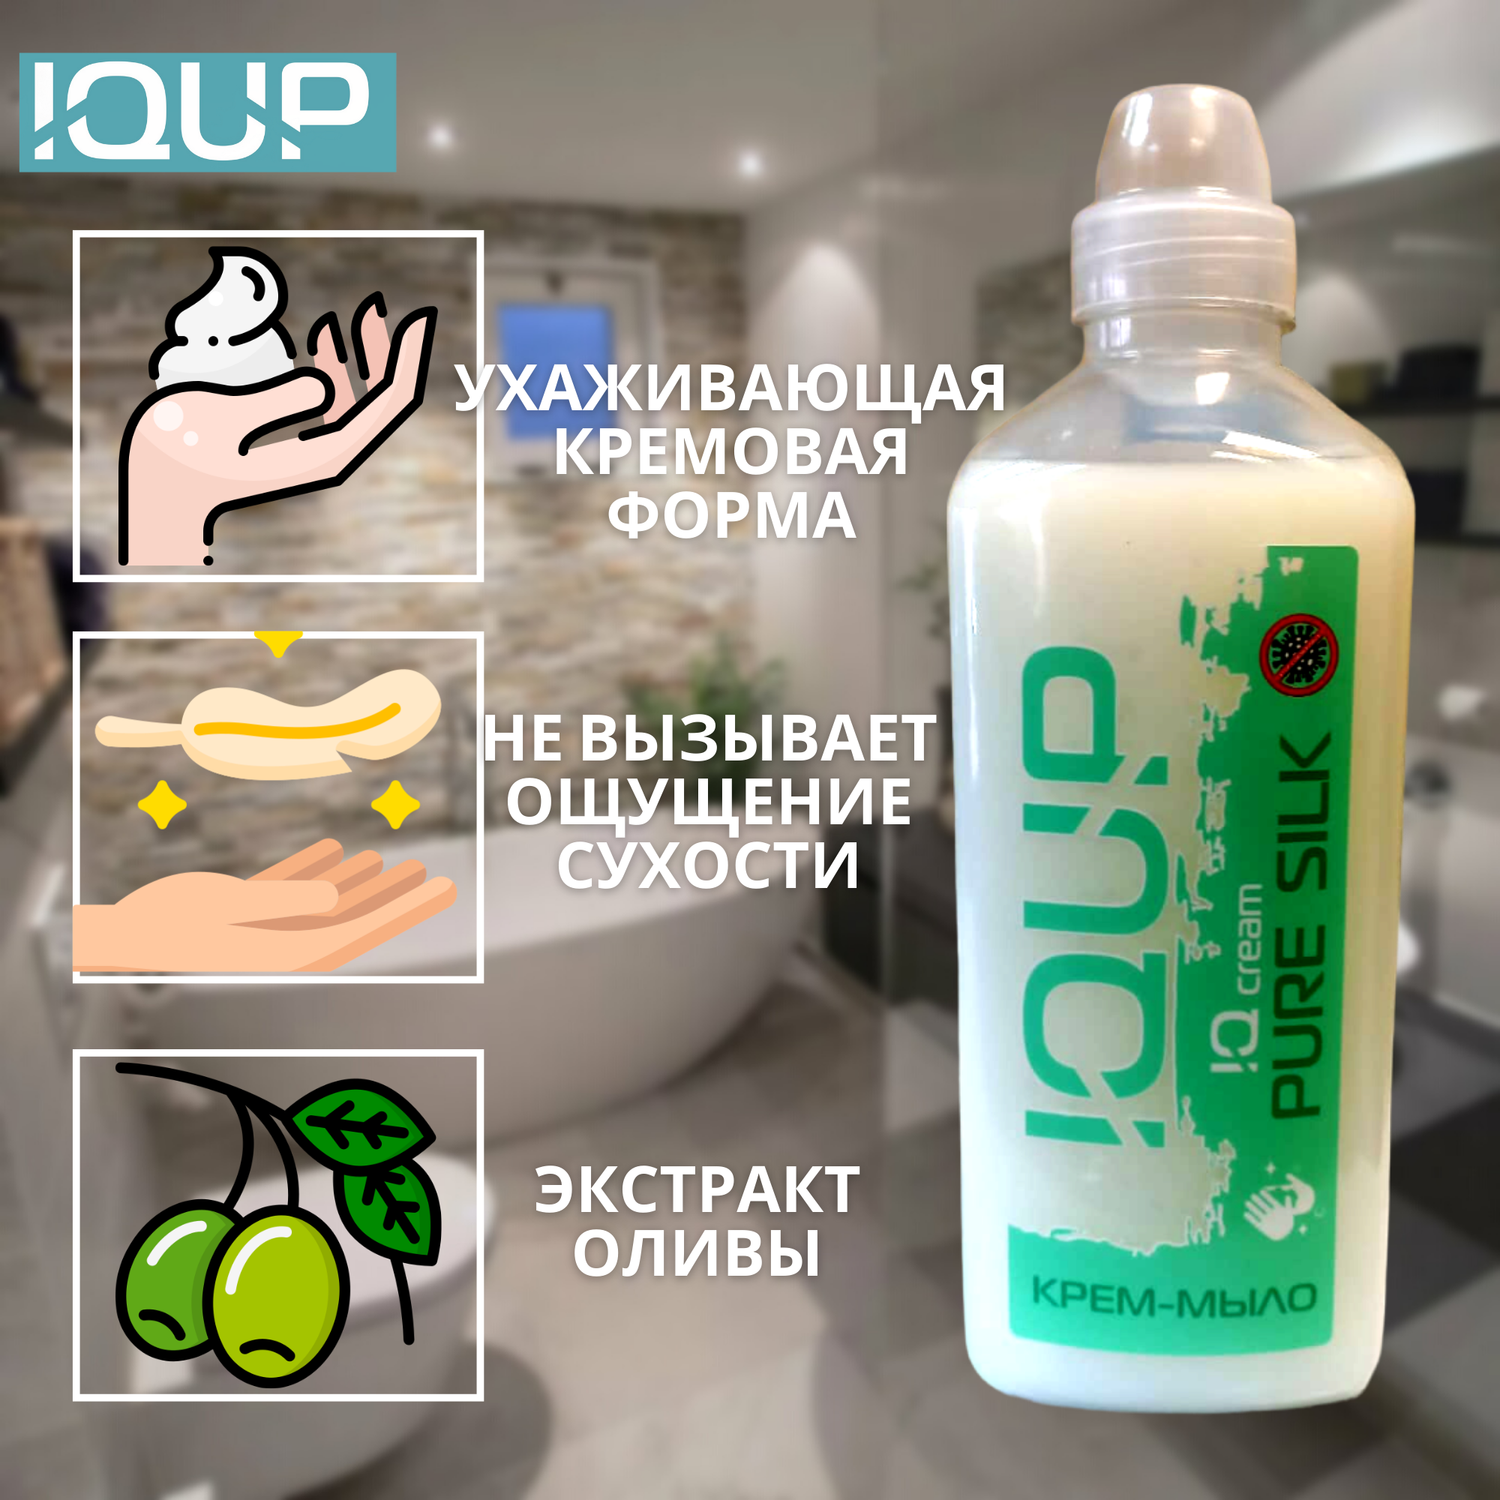 Жидкое крем-мыло для рук IQUP Белое 1000 мл - фото 2